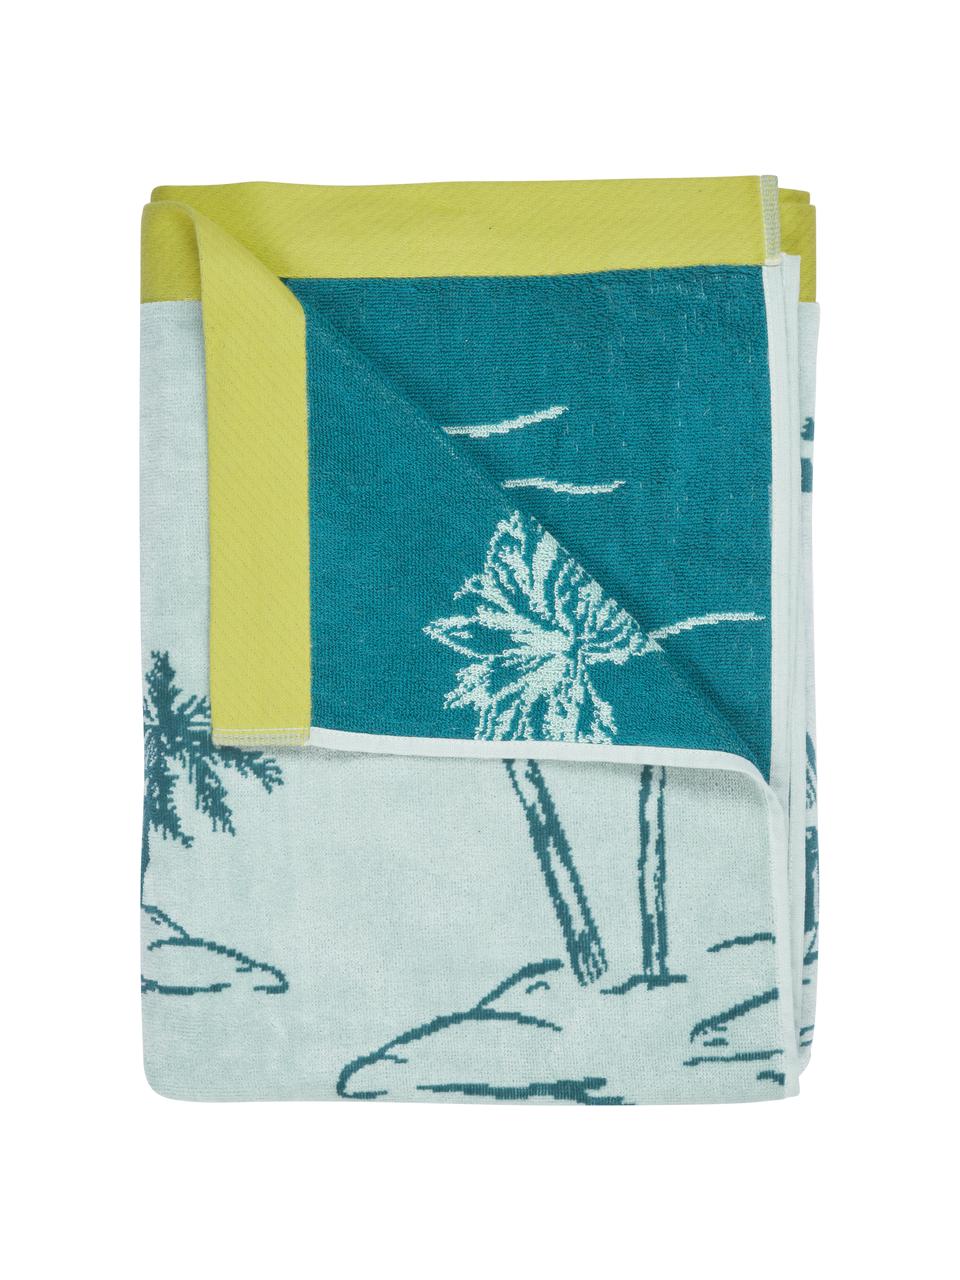 Bavlněná plážová osuška Oceano, 100 % bavlna, Žlutá, odstíny modré, Š 100 cm, D 180 cm